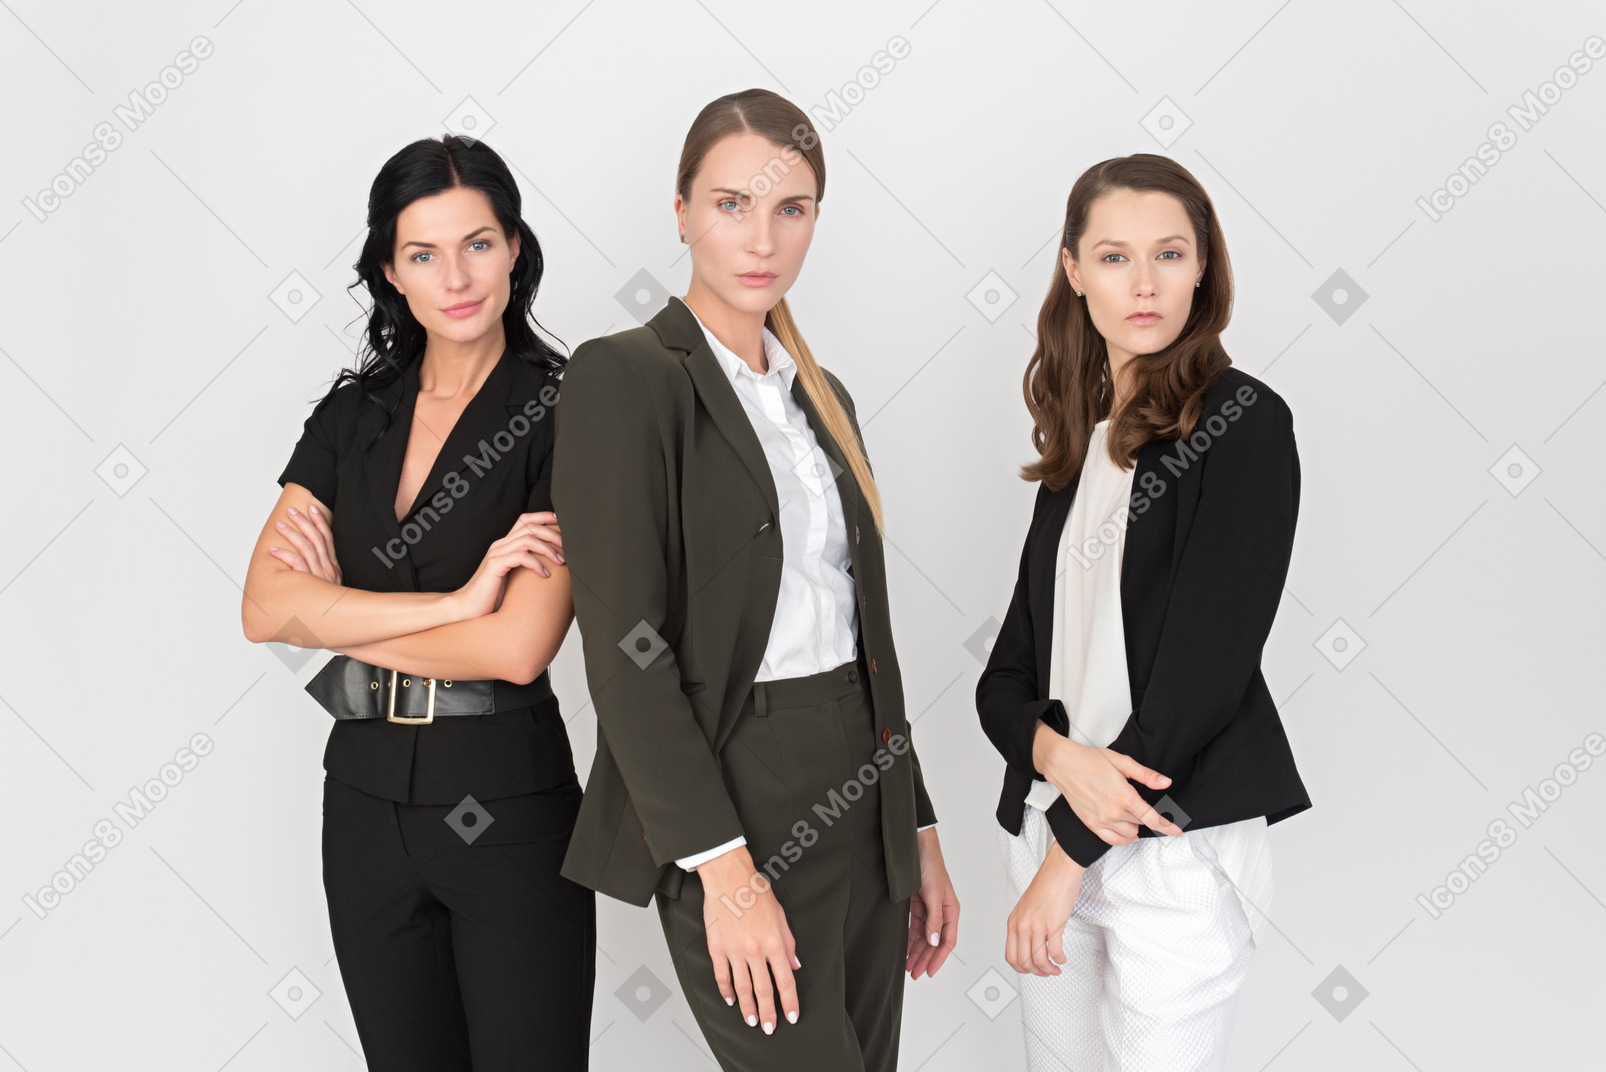 Женская команда готова столкнуться со всеми трудностями борьбы